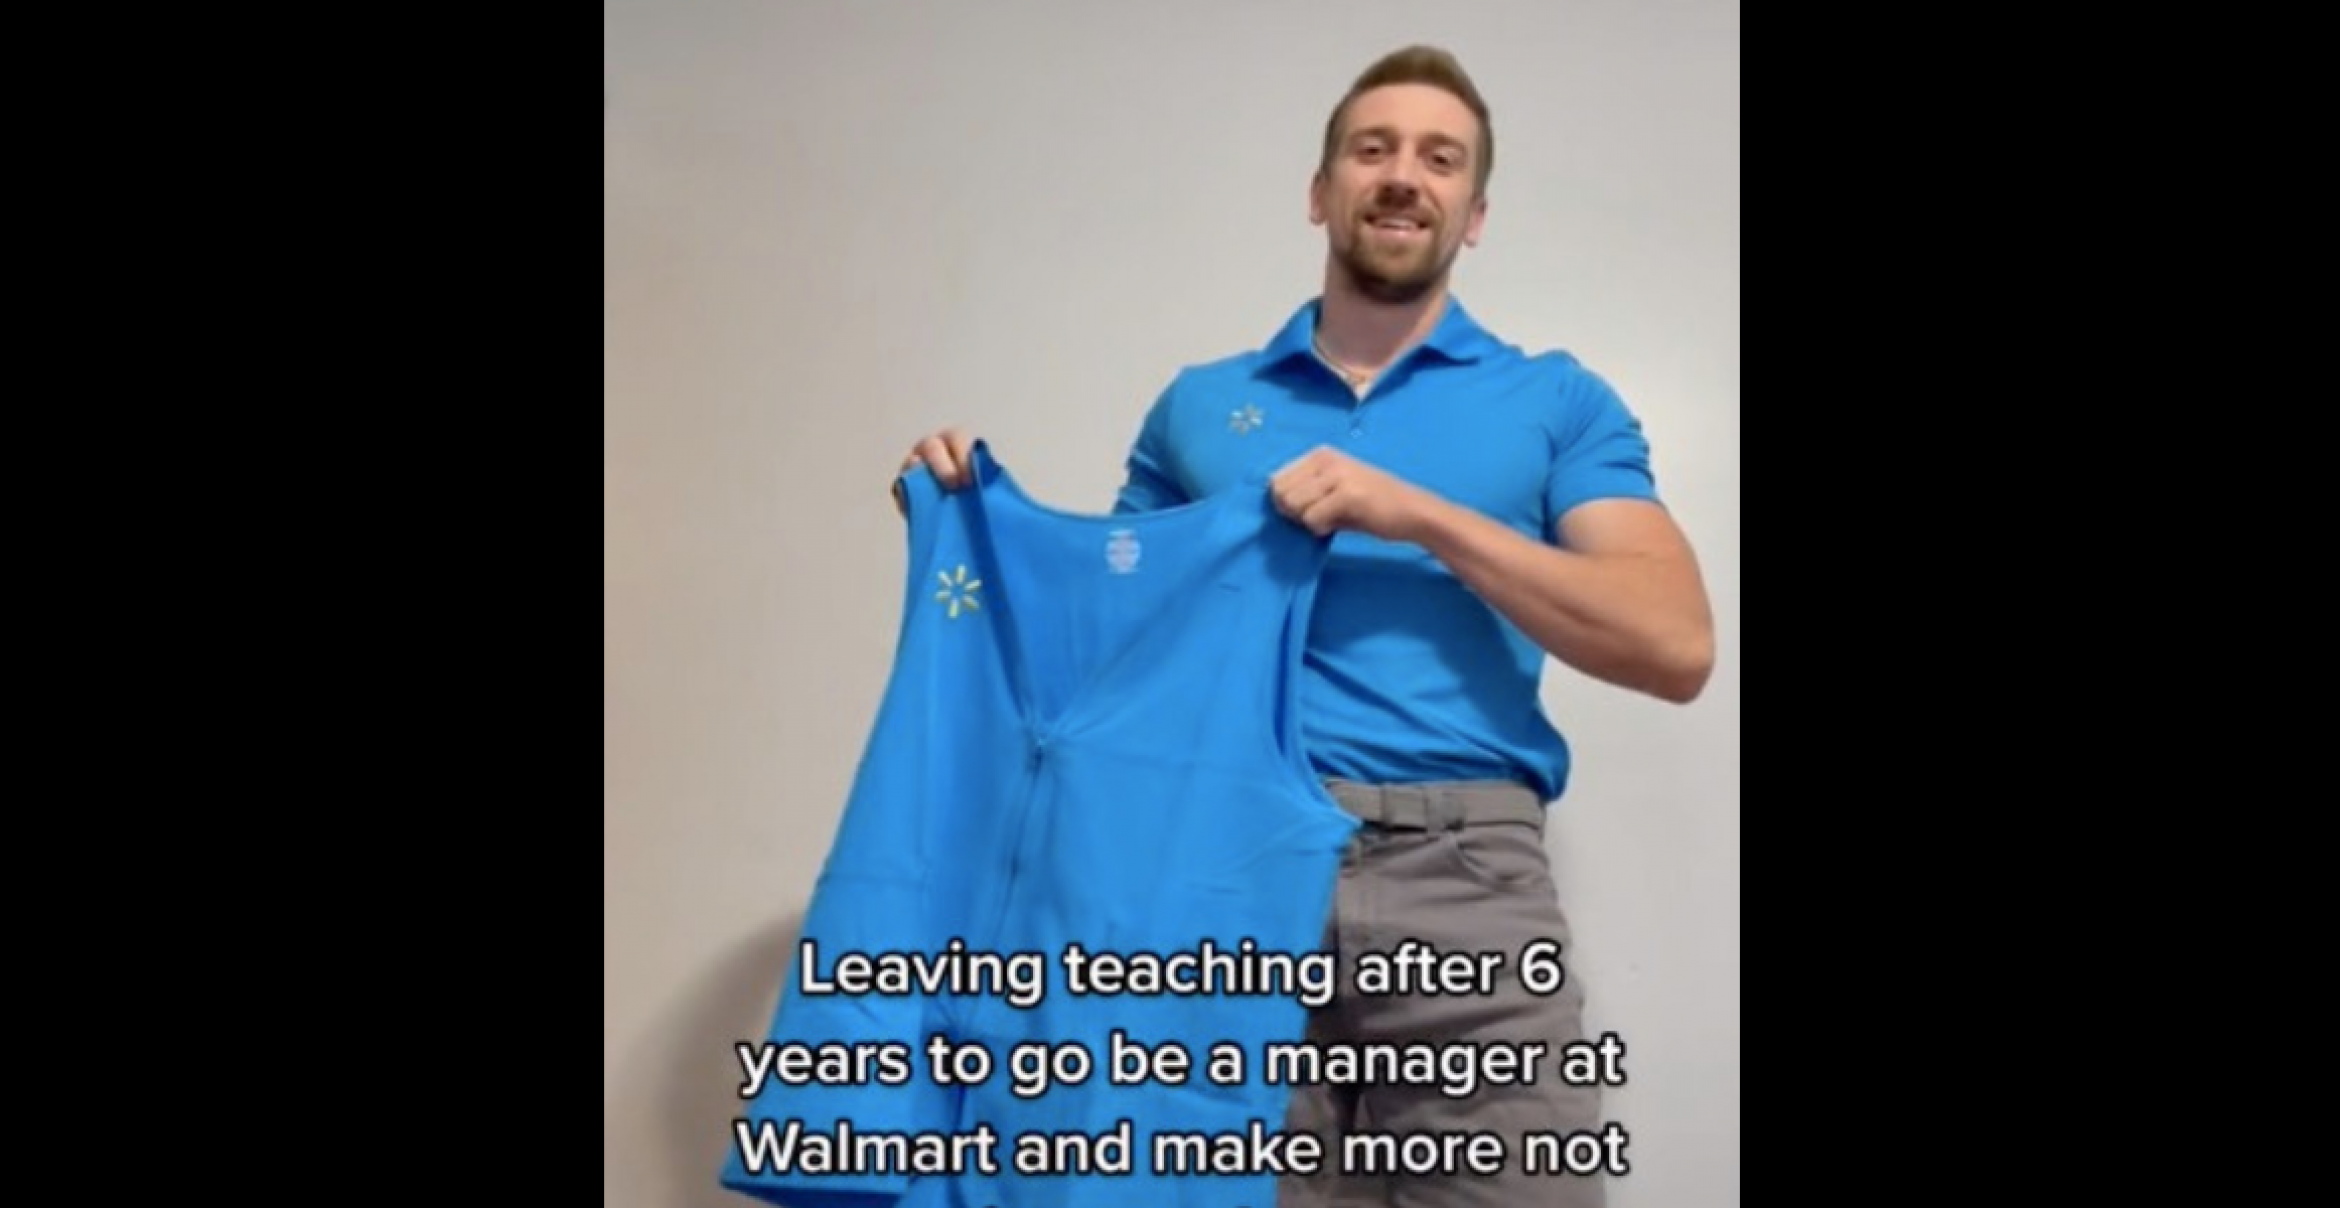 Walmart statt Lehrer: Ungewöhnlicher Jobwechsel für 20.000 Dollar mehr